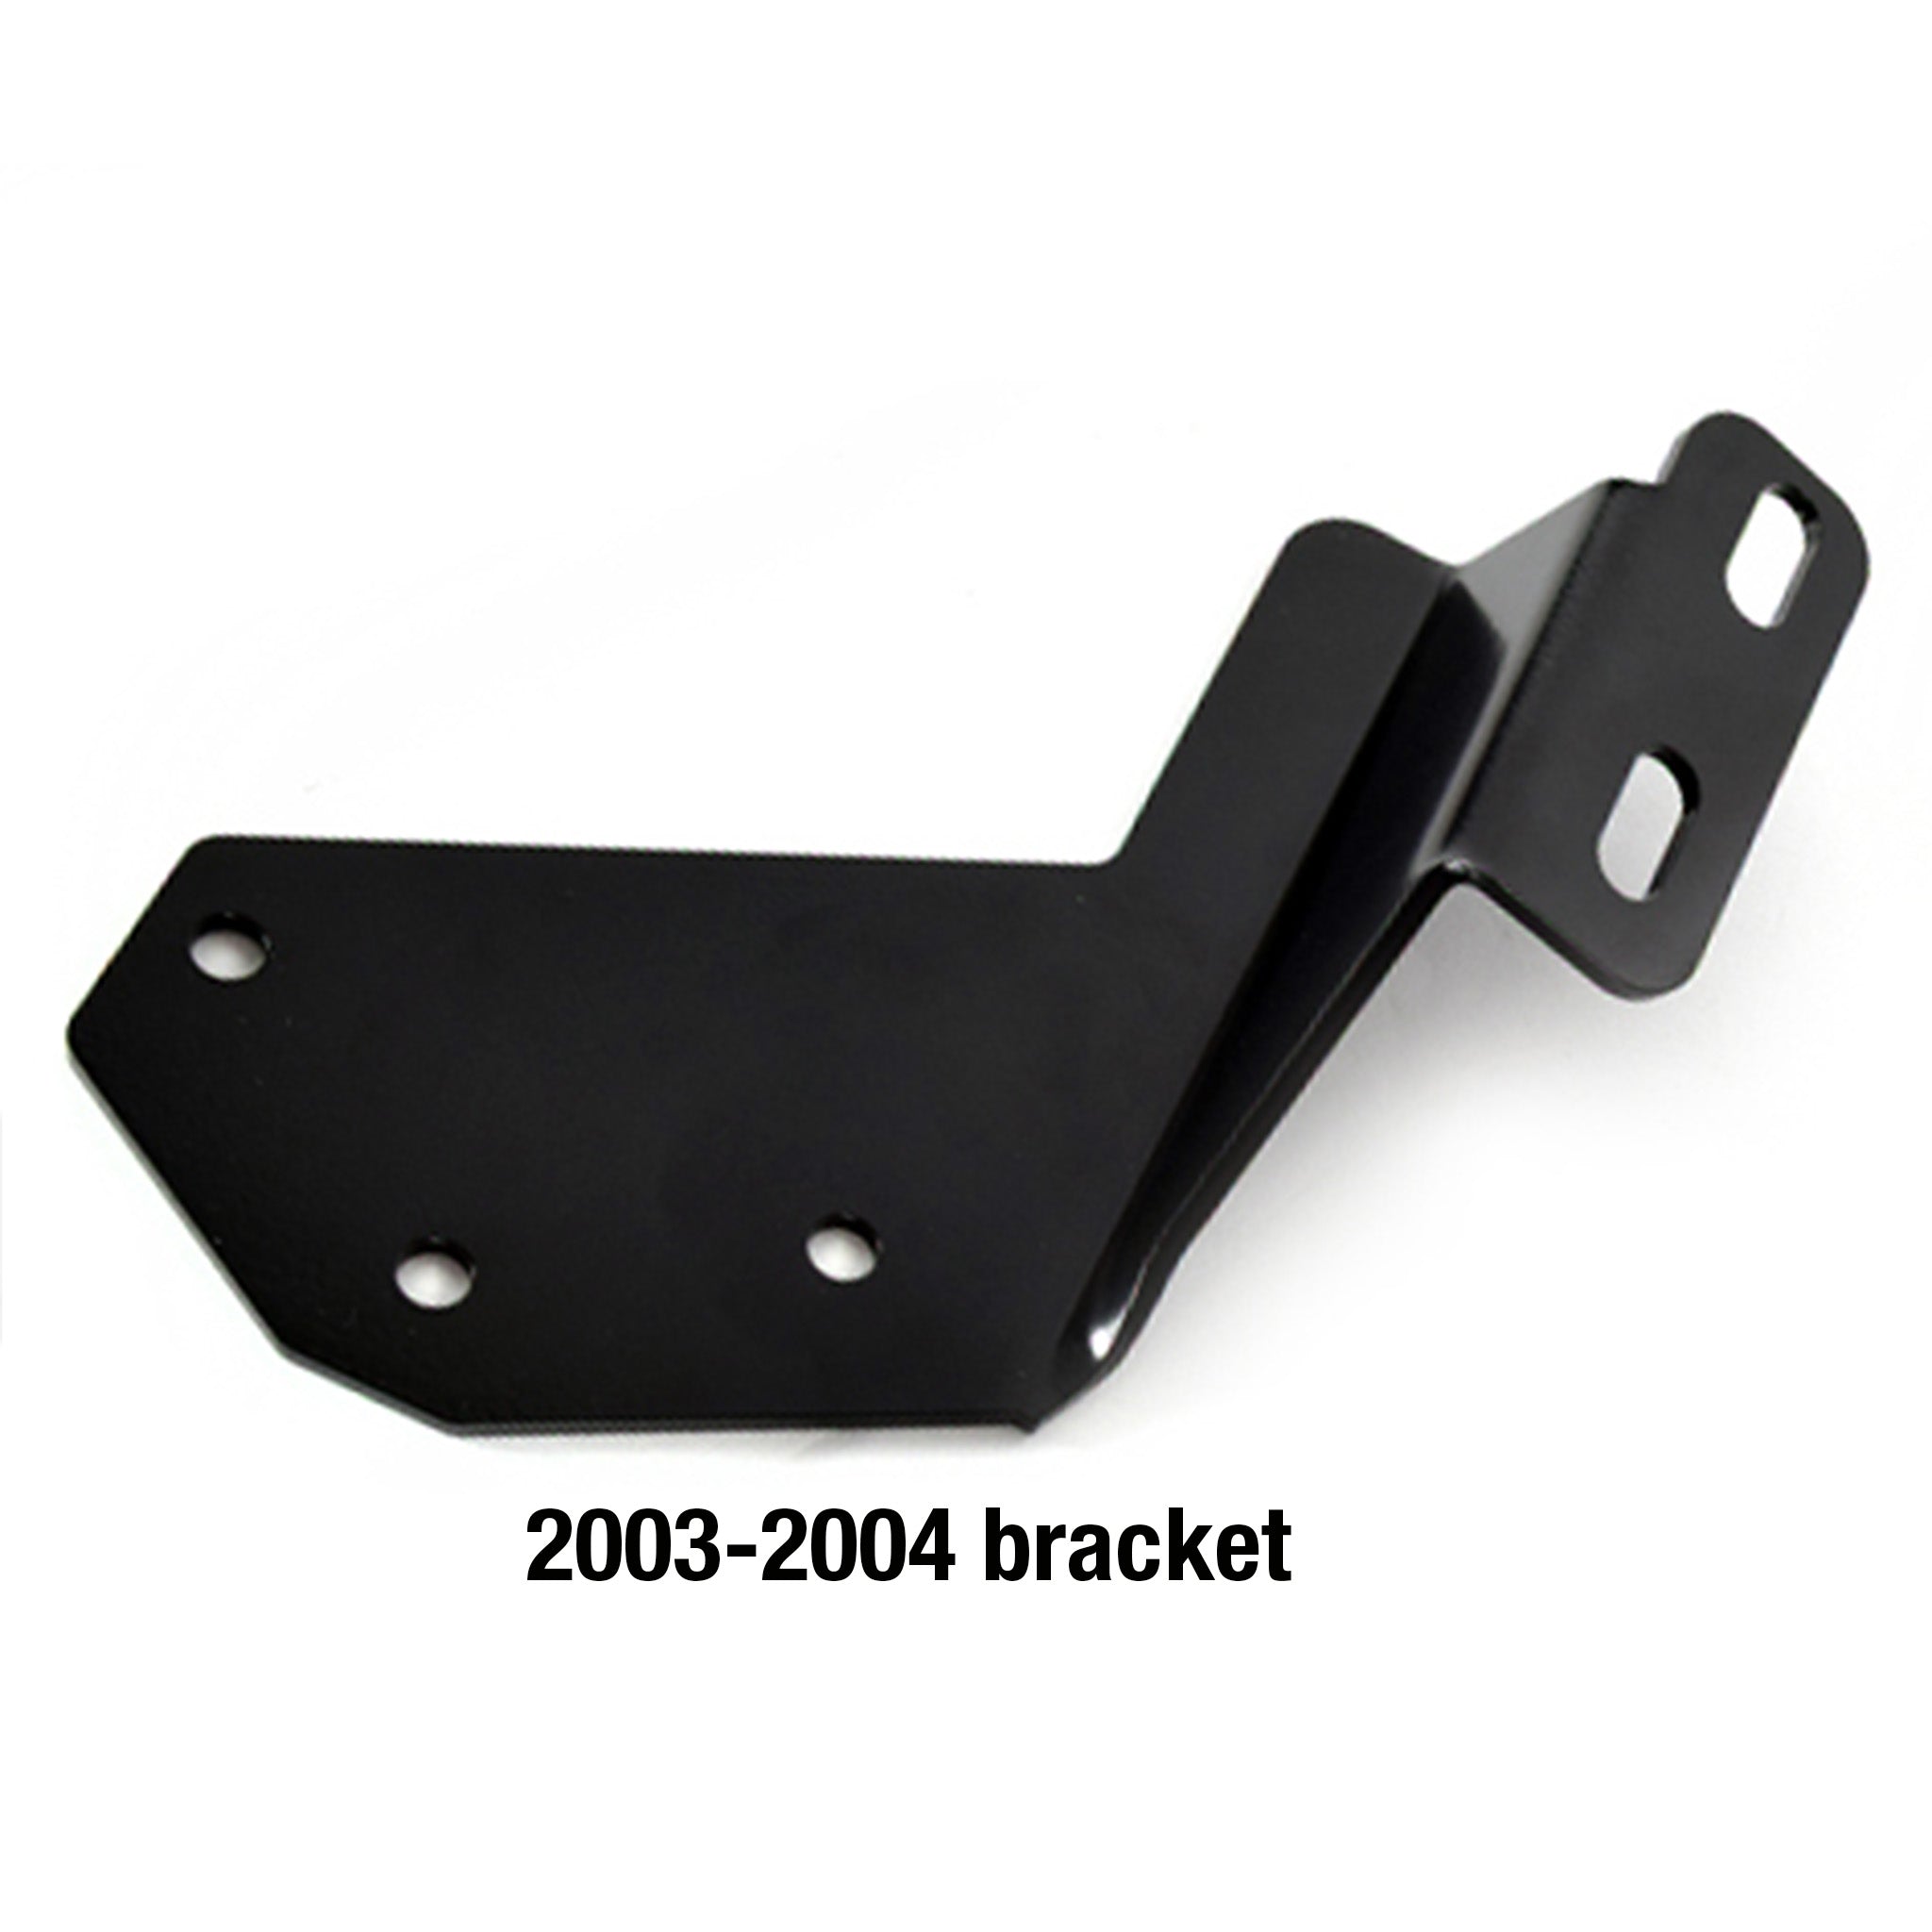 2003 - 2004 Oil Filter Adapter Mounting Bracket for BPD Oil Filter Adapter